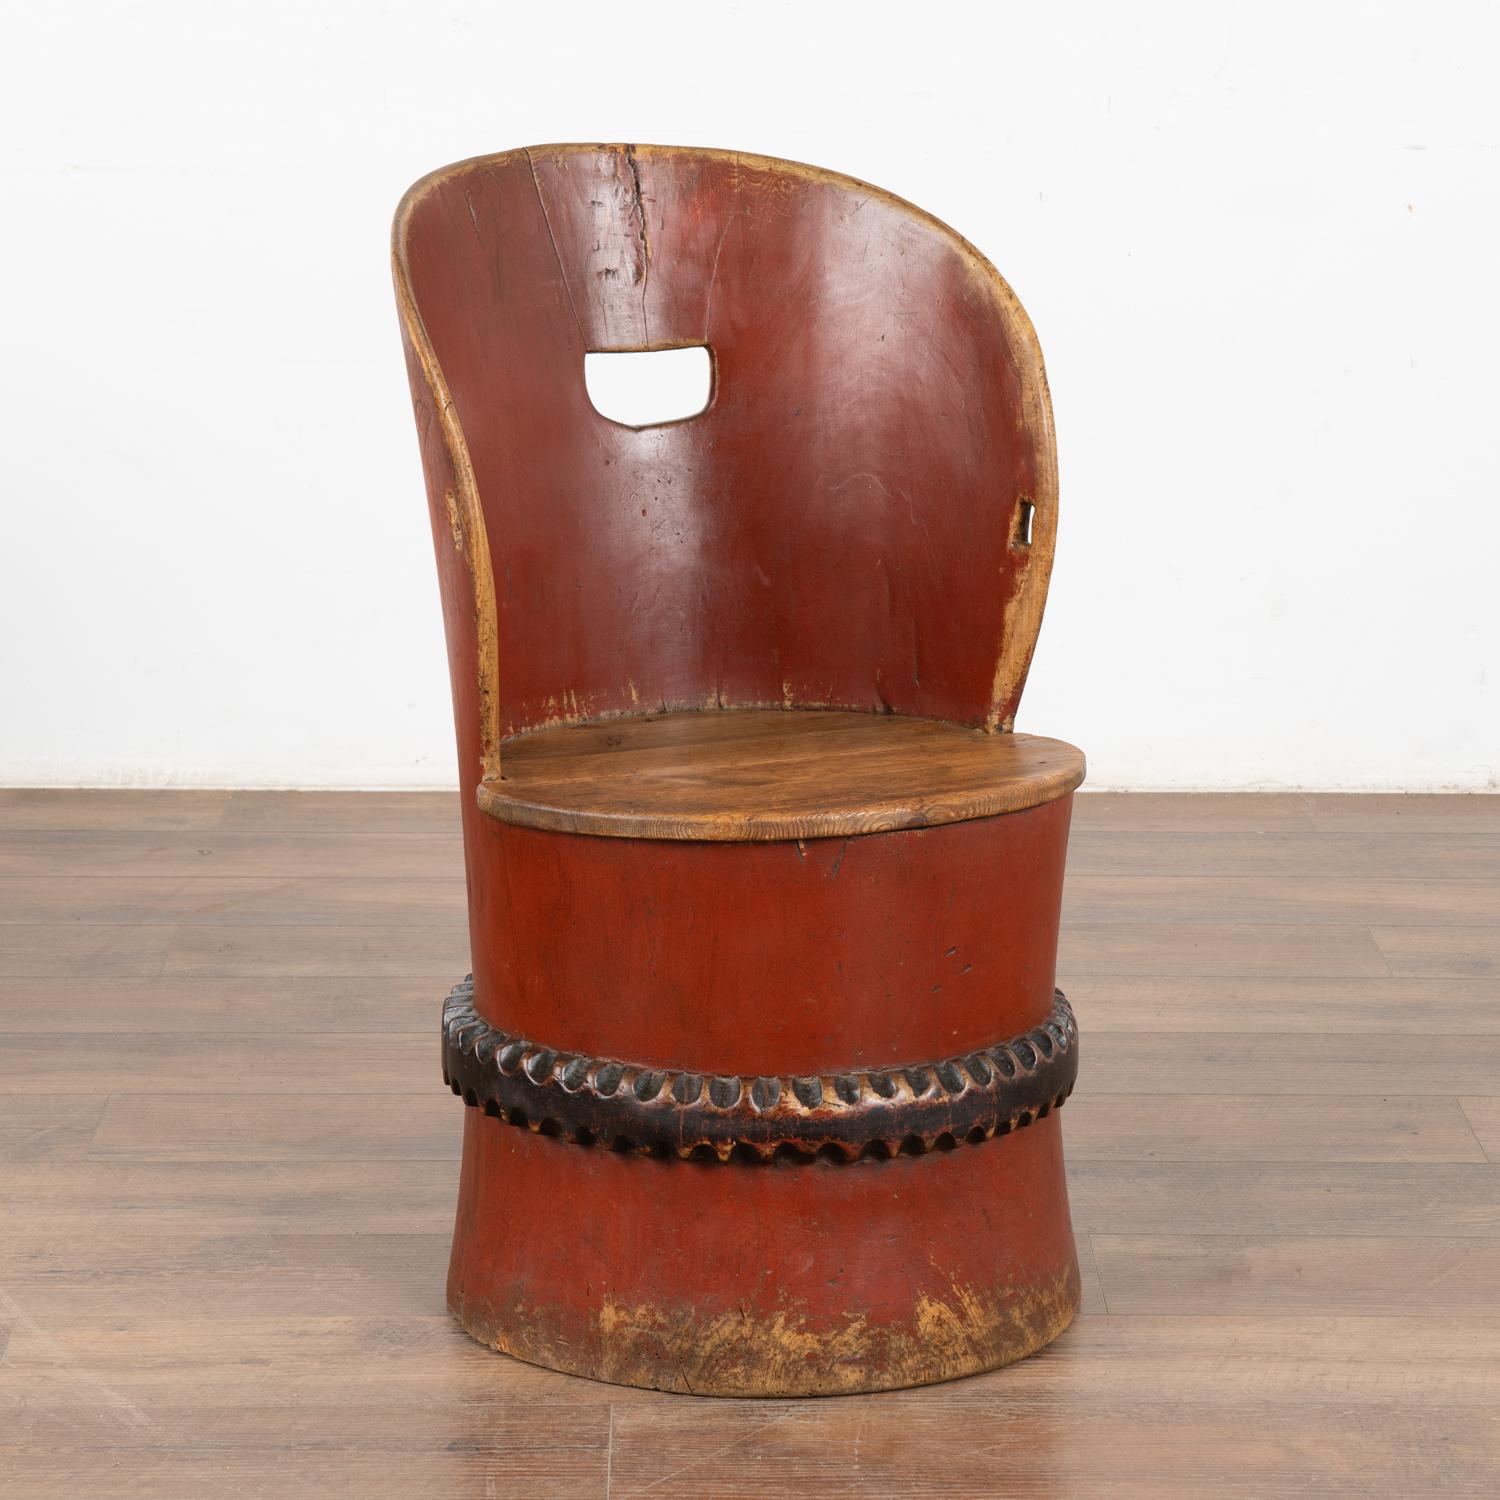 Antiker geschnitzter und bemalter Kubbestol, ein traditioneller skandinavischer Stuhl, der aus einem einzigen Stamm gefertigt wird.
Die schöne rote Originalfarbe wird durch ein geschnitztes und schwarz bemaltes Band akzentuiert. Ein Großteil der